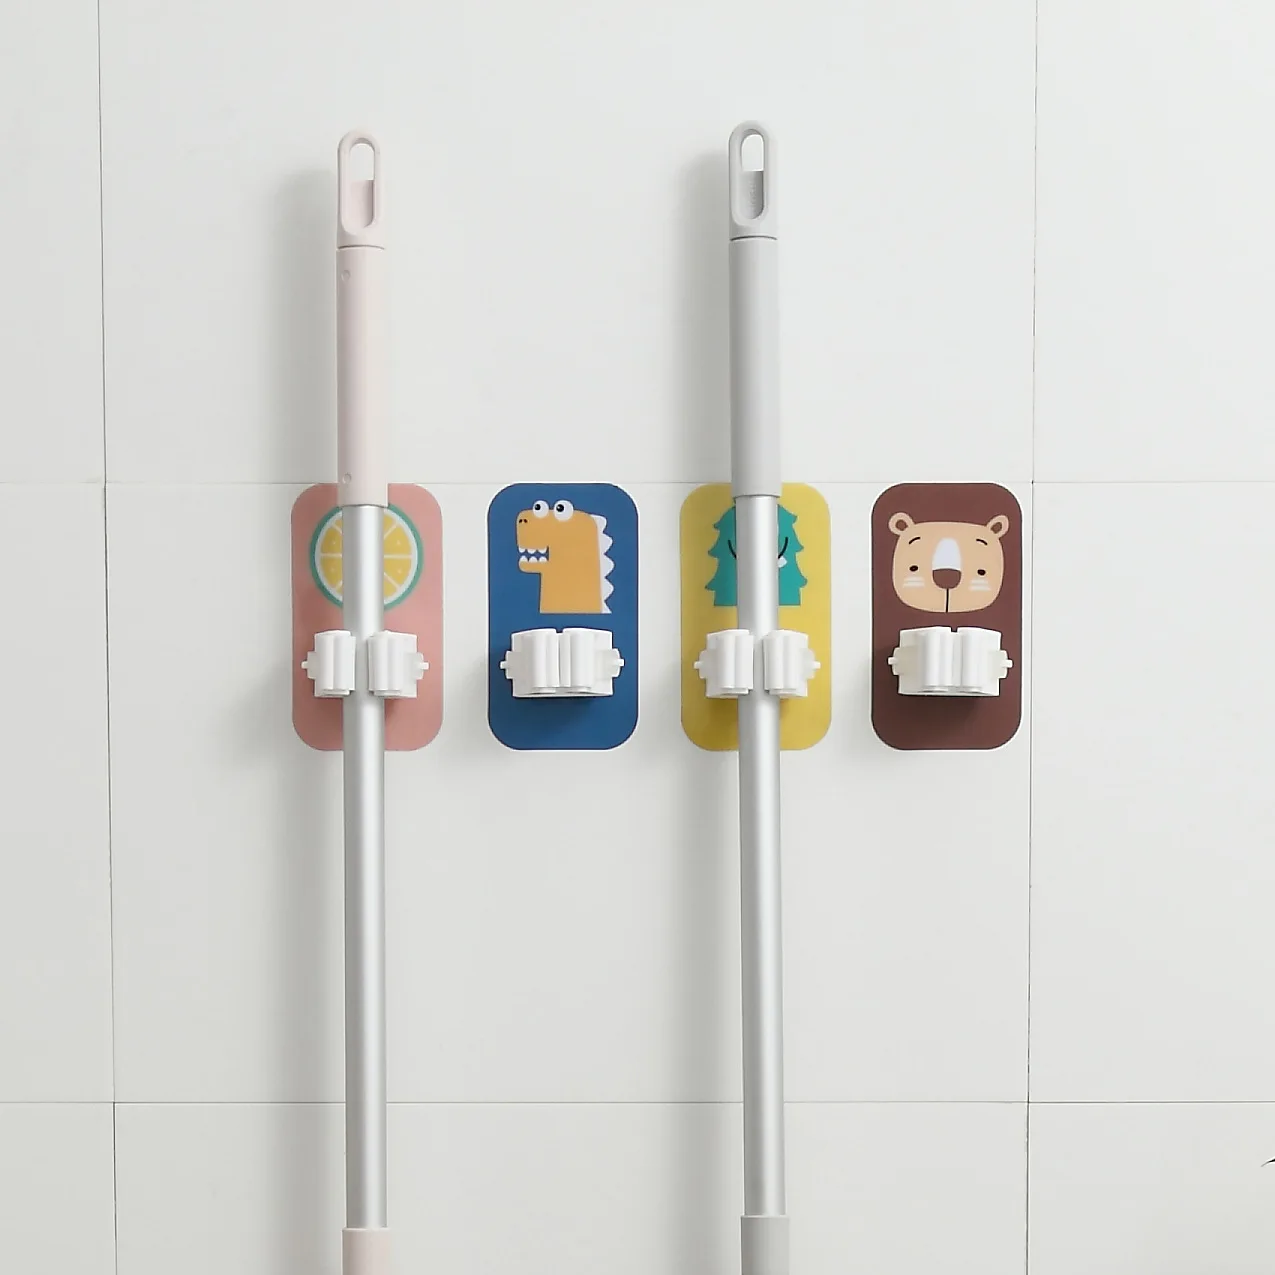 2023 new design hot sell kitchen accessories bathroom vanities Cartoon Broom Mop Storage holders Mop rack